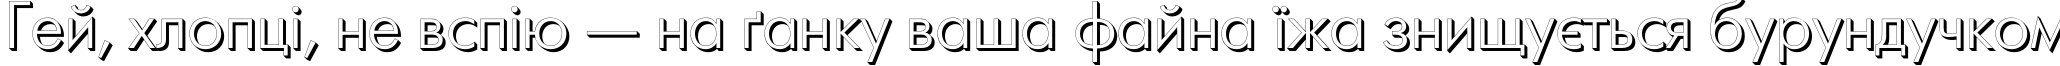 Пример написания шрифтом FuturisVolumeC текста на украинском